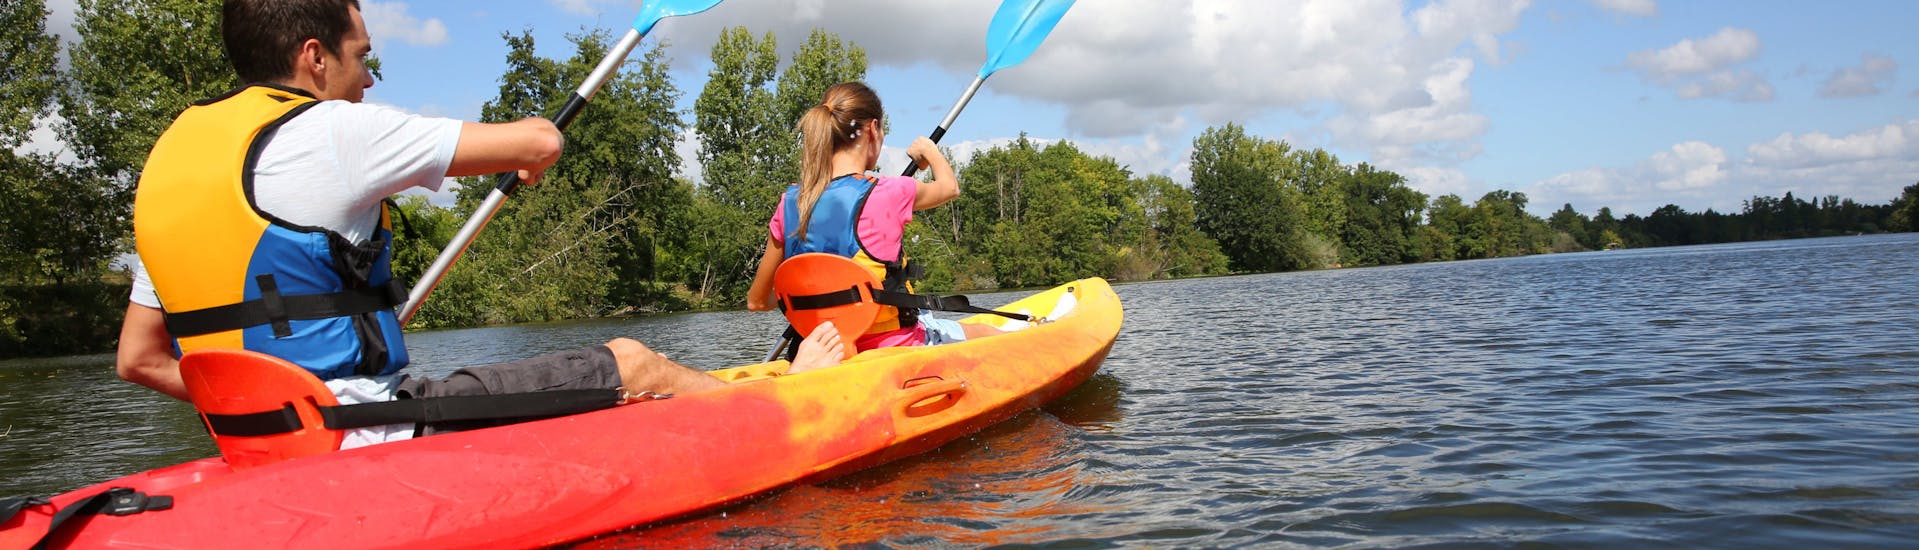 Kayak e canoa per esperti a Chalonnes-sur-Loire - Loire River.